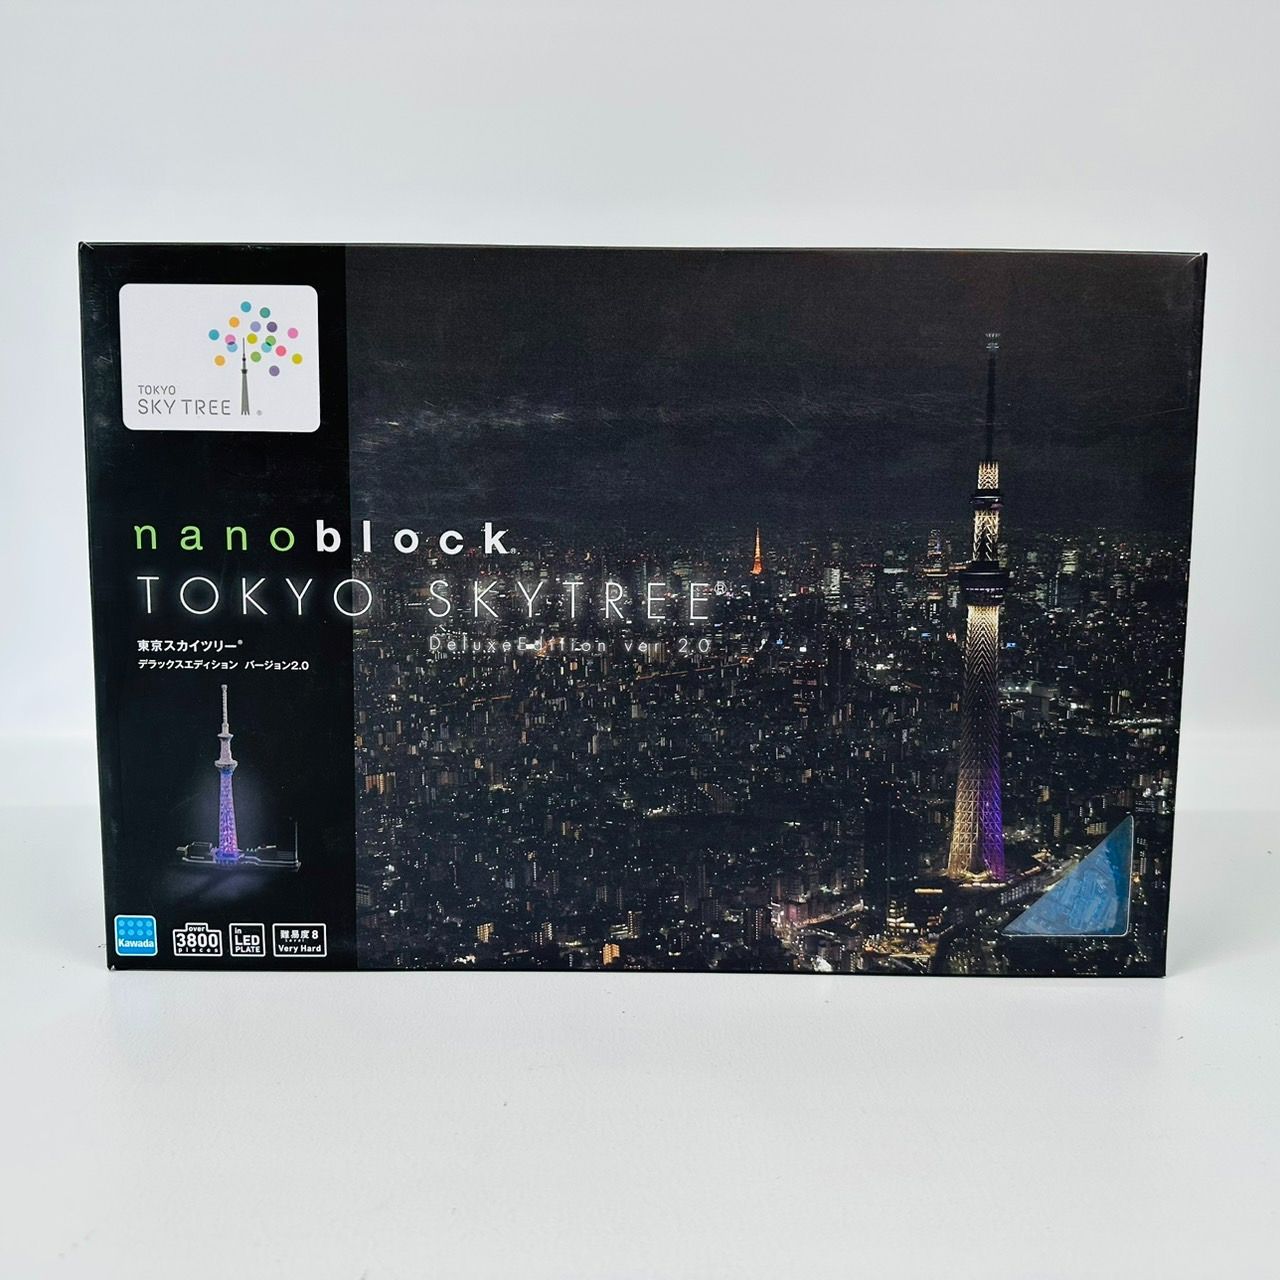 nanoblock 東京スカイツリー デラックスエディション バージョン 2.0 / ナノブロック TOKYO SKY TREE  DeluxeEdition LED レゴ